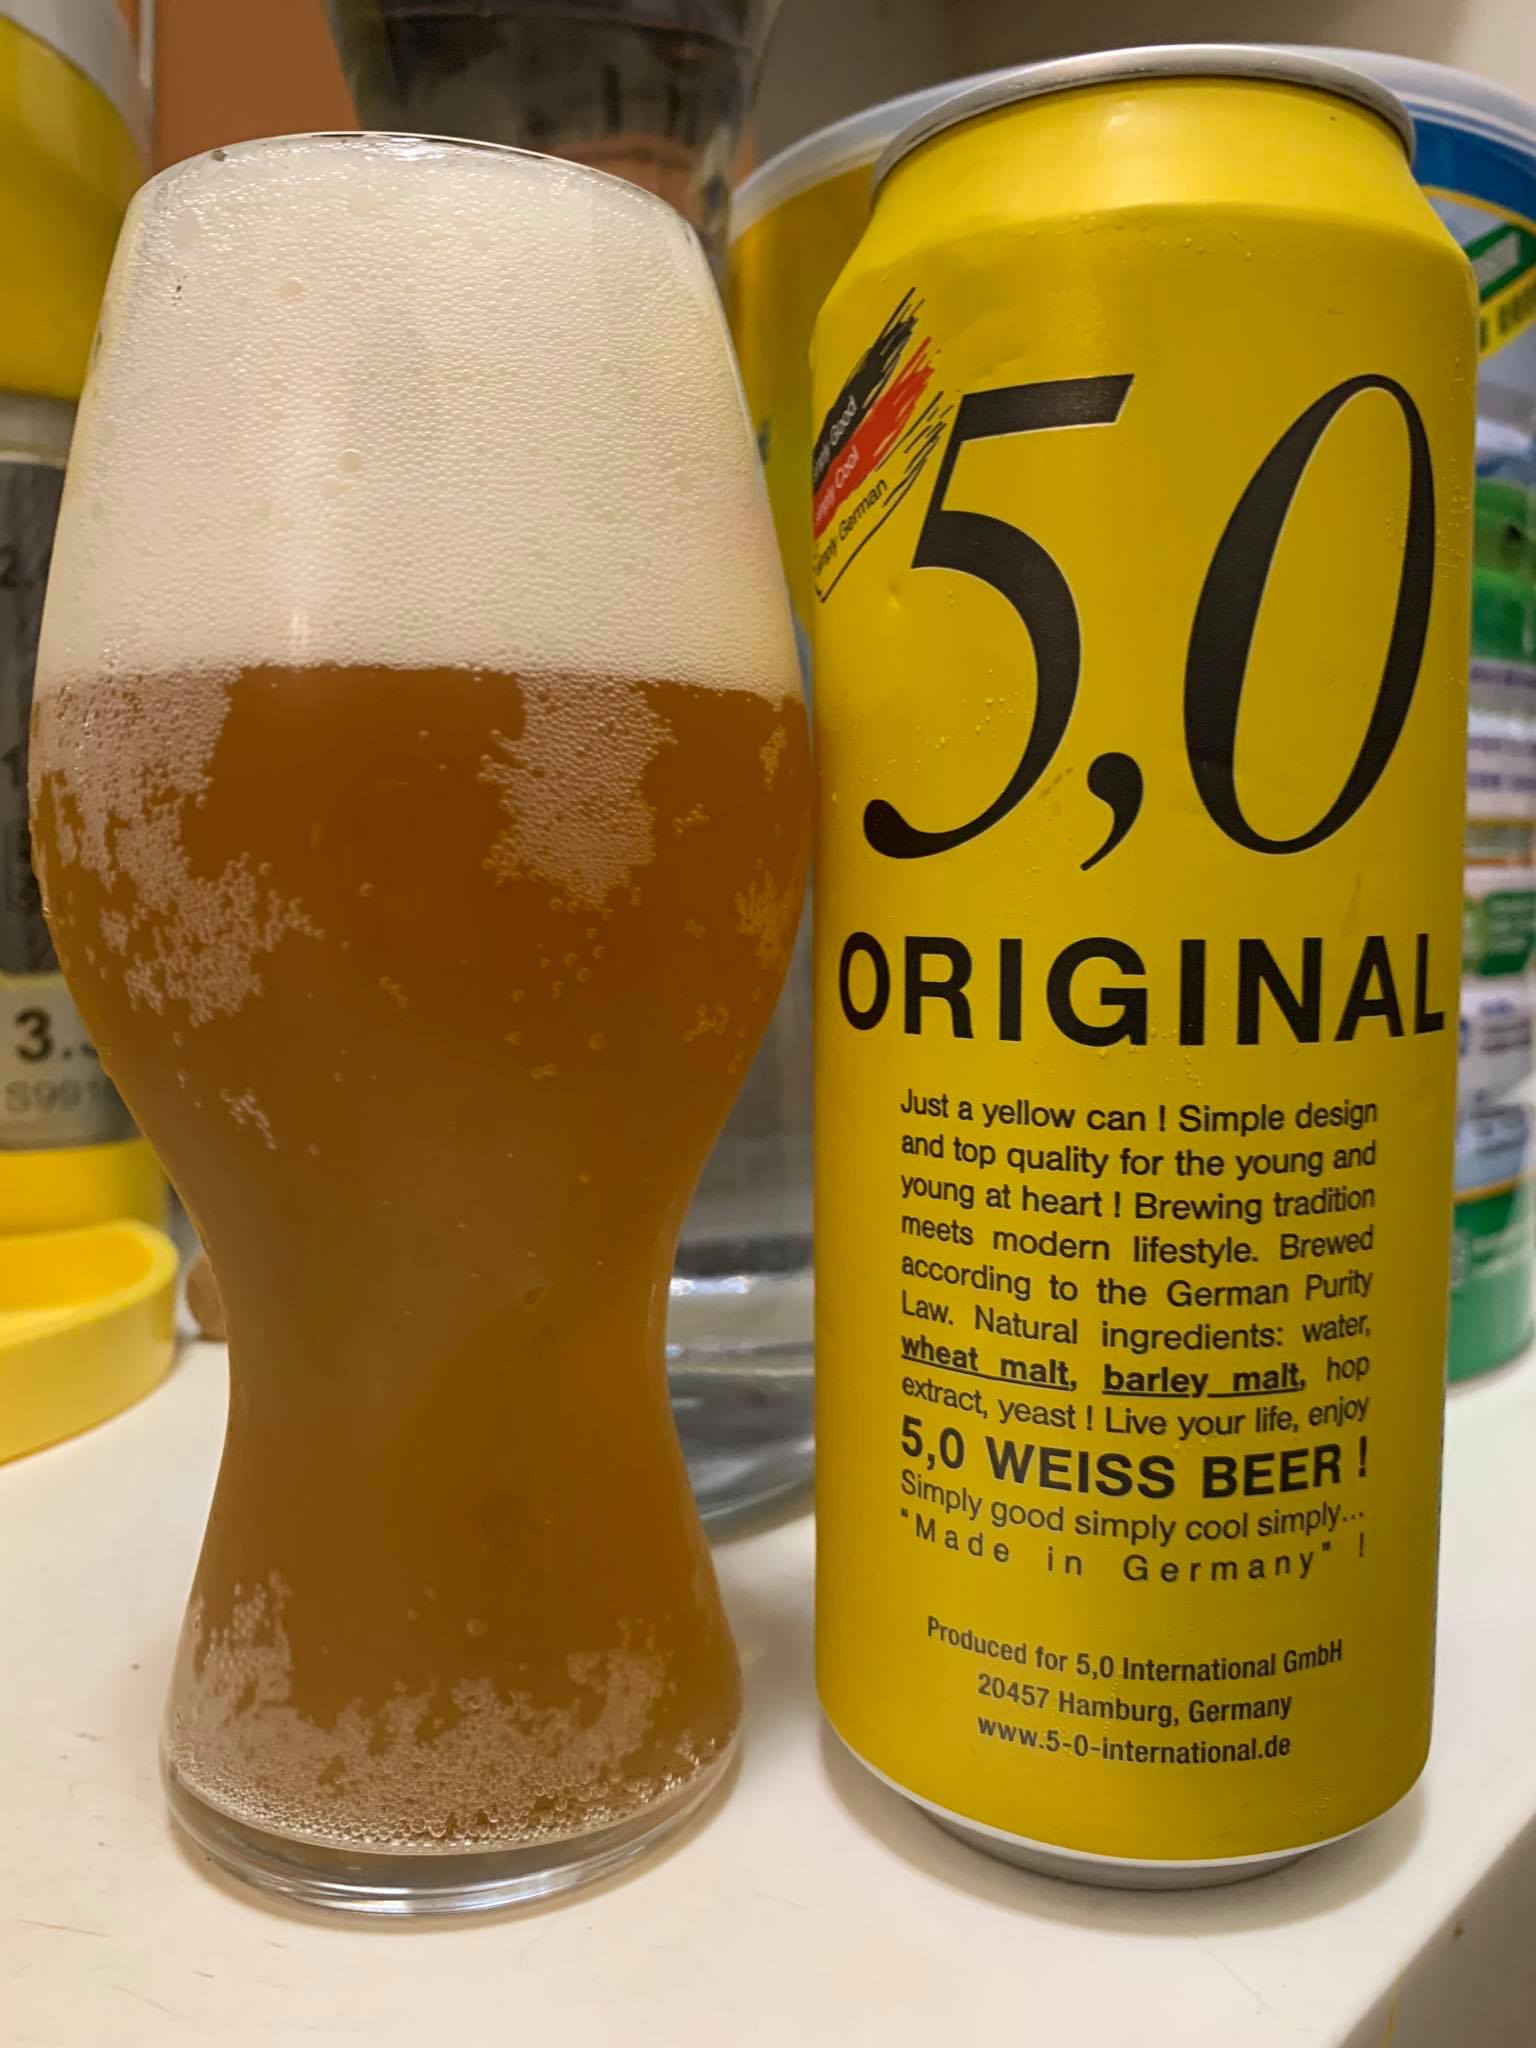 5,0 Original Weiss Beer